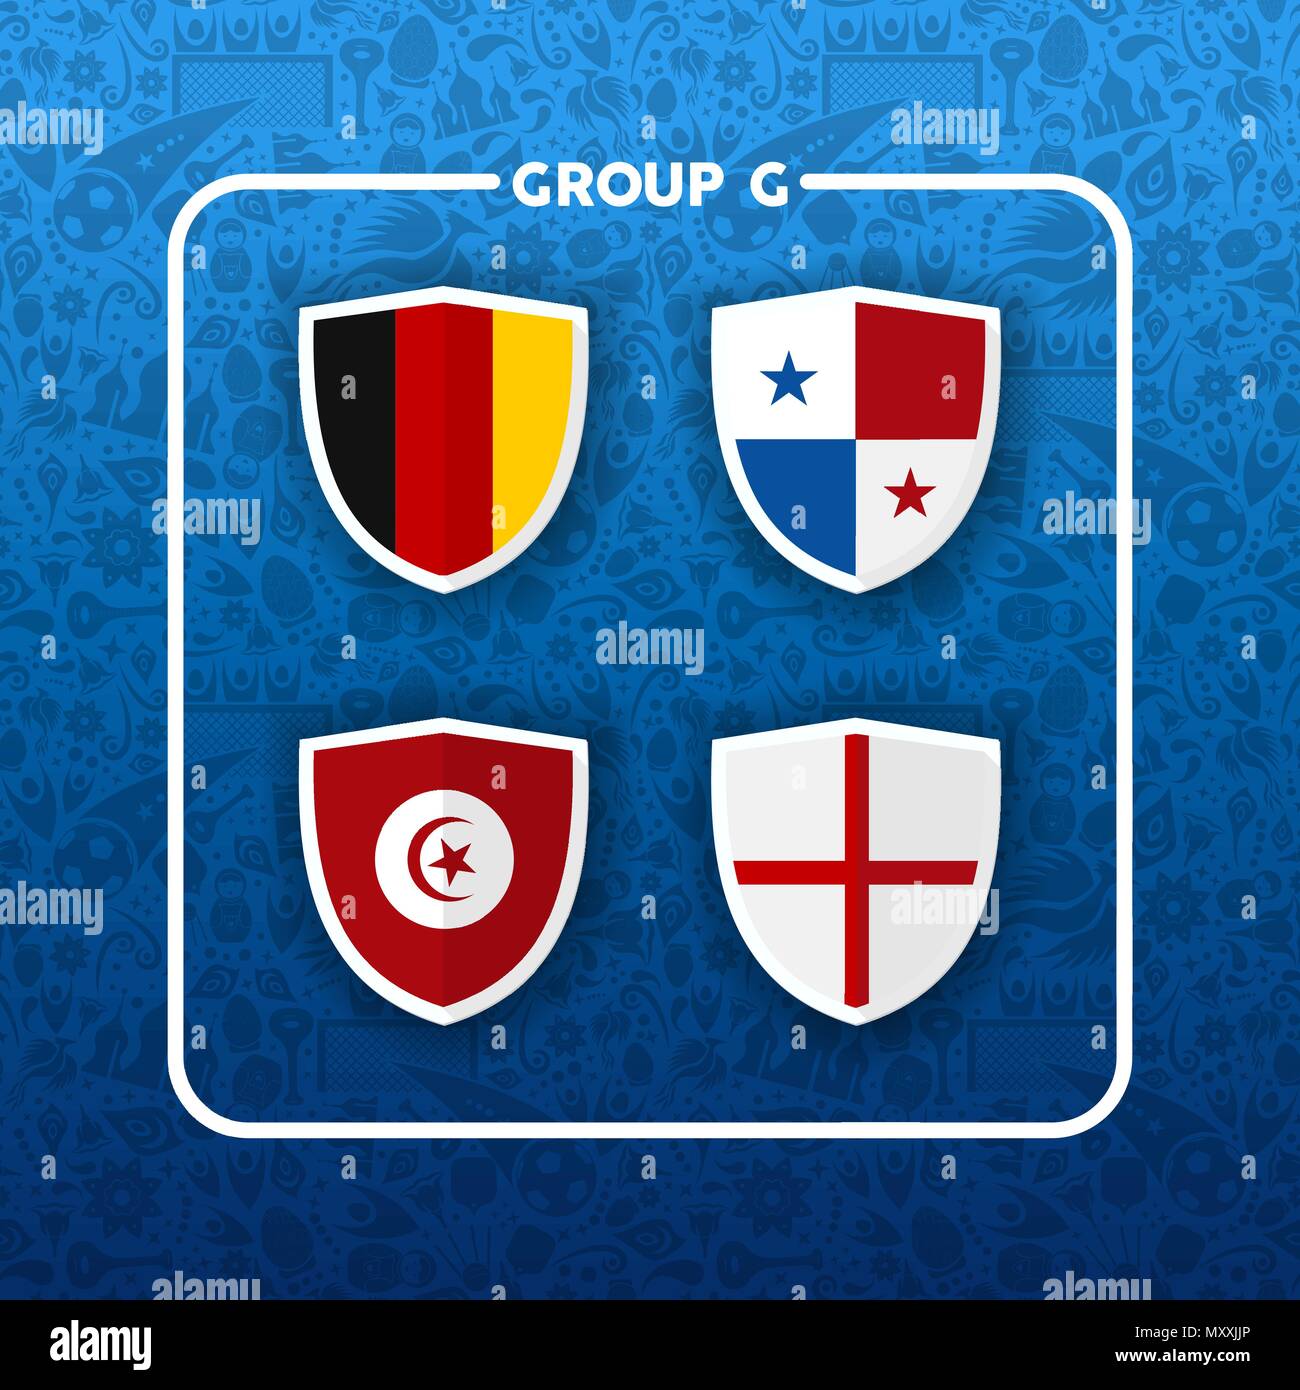 Wm-Ereignis planen. Gruppe G Land team Liste der Fußball-Match spiele. Gehören Belgien, Japan, Polen und Senegal. EPS 10 Vektor. Stock Vektor